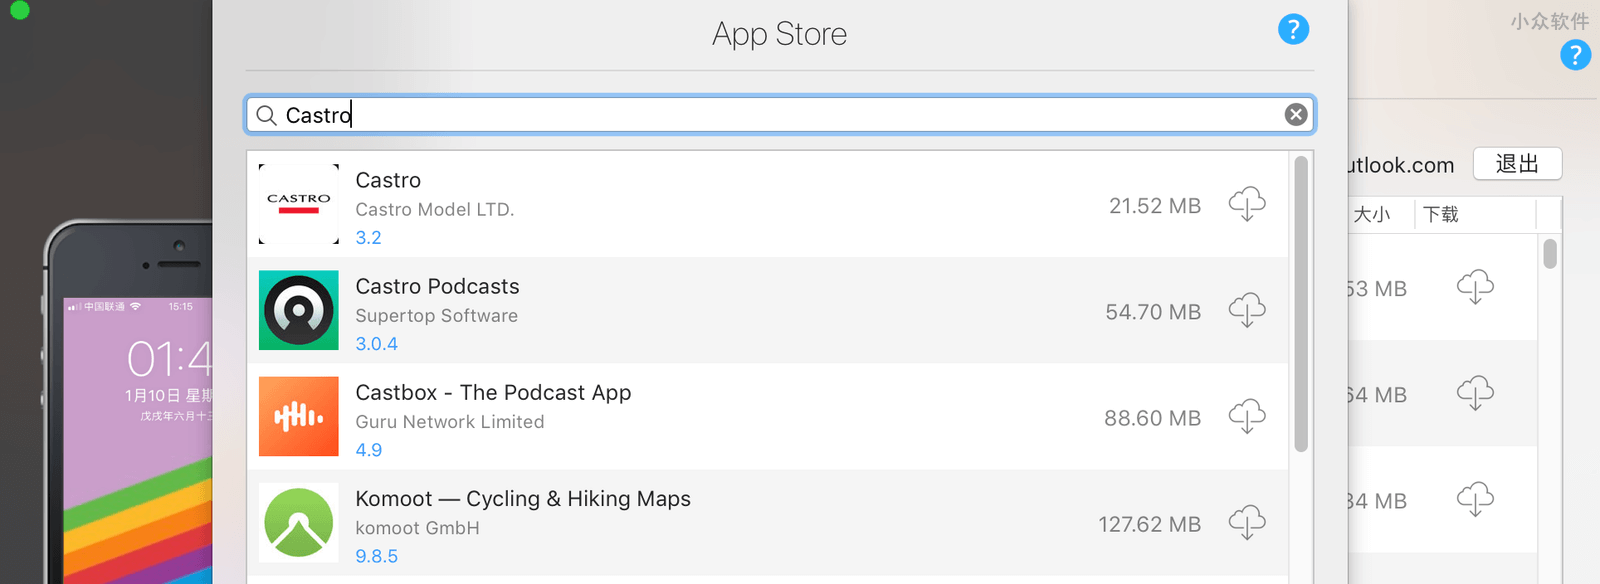 那个可以备份 iOS 下架应用的 iMazing 正在冰点特价，只需 64 元 3